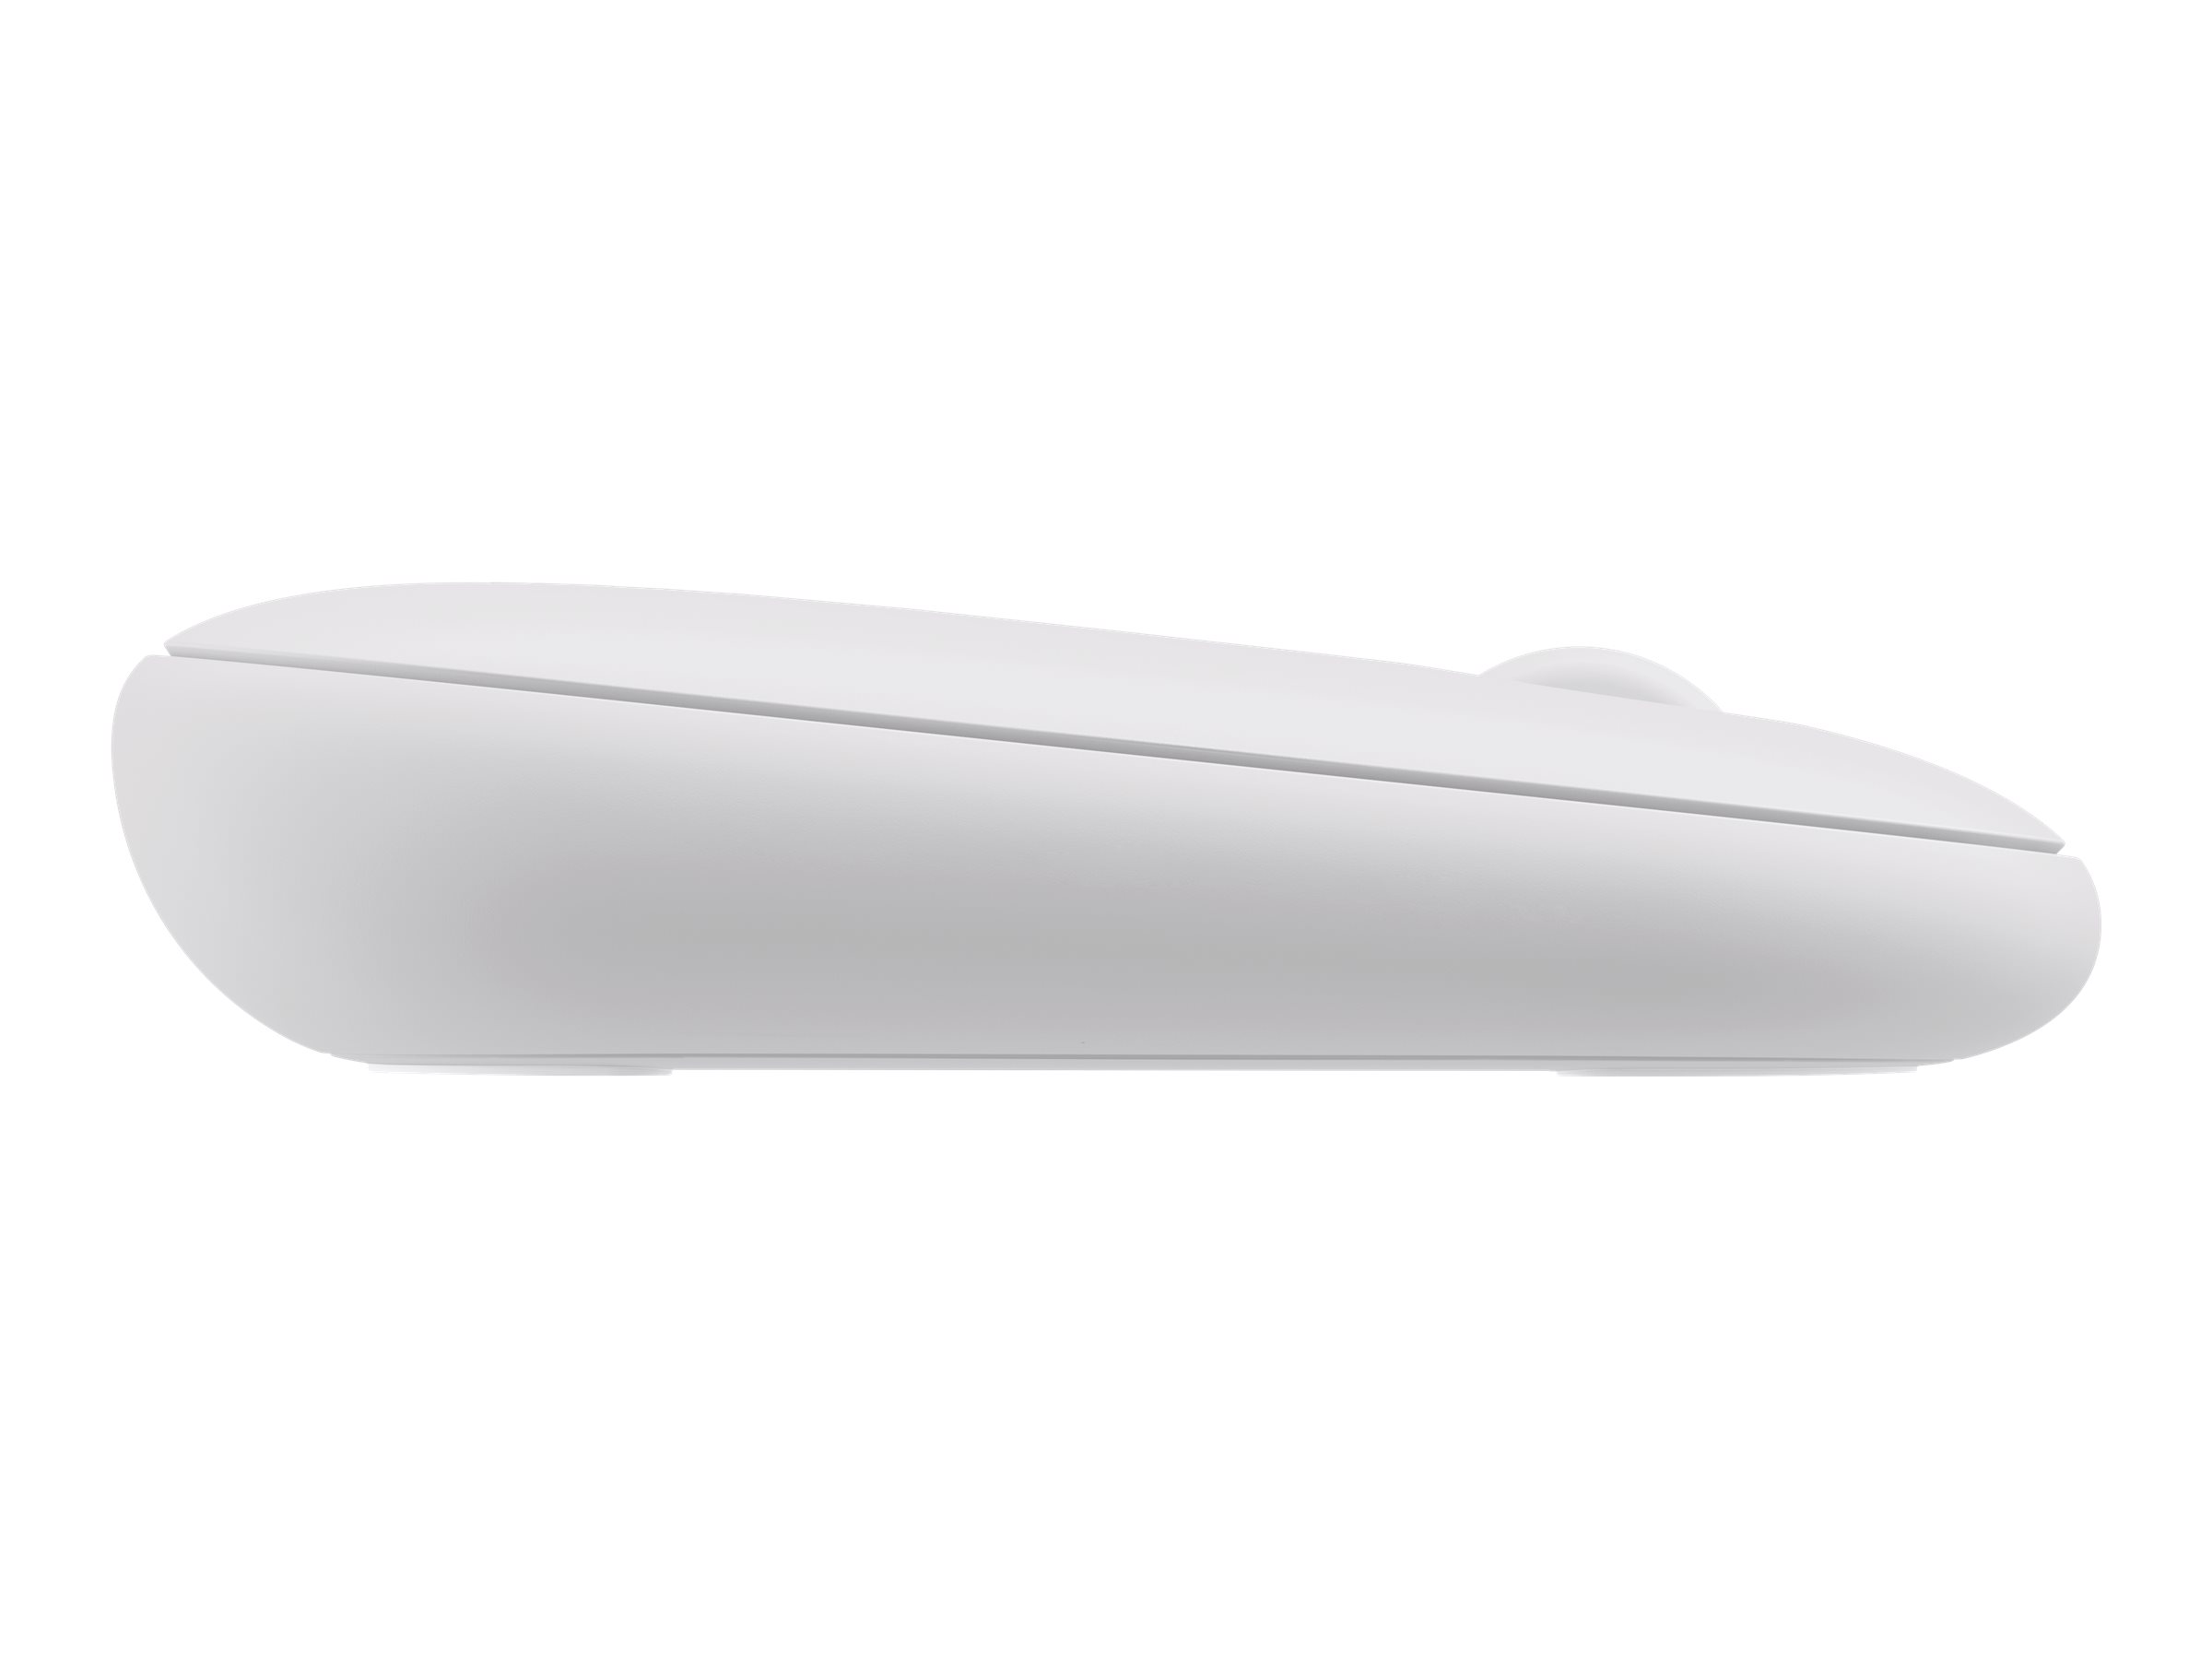 Logitech Pebble Mouse 2 M350s - Souris - optique - 3 boutons - sans fil - Bluetooth 5.2 LE - blanc ton sur ton - 910-007013 - Souris